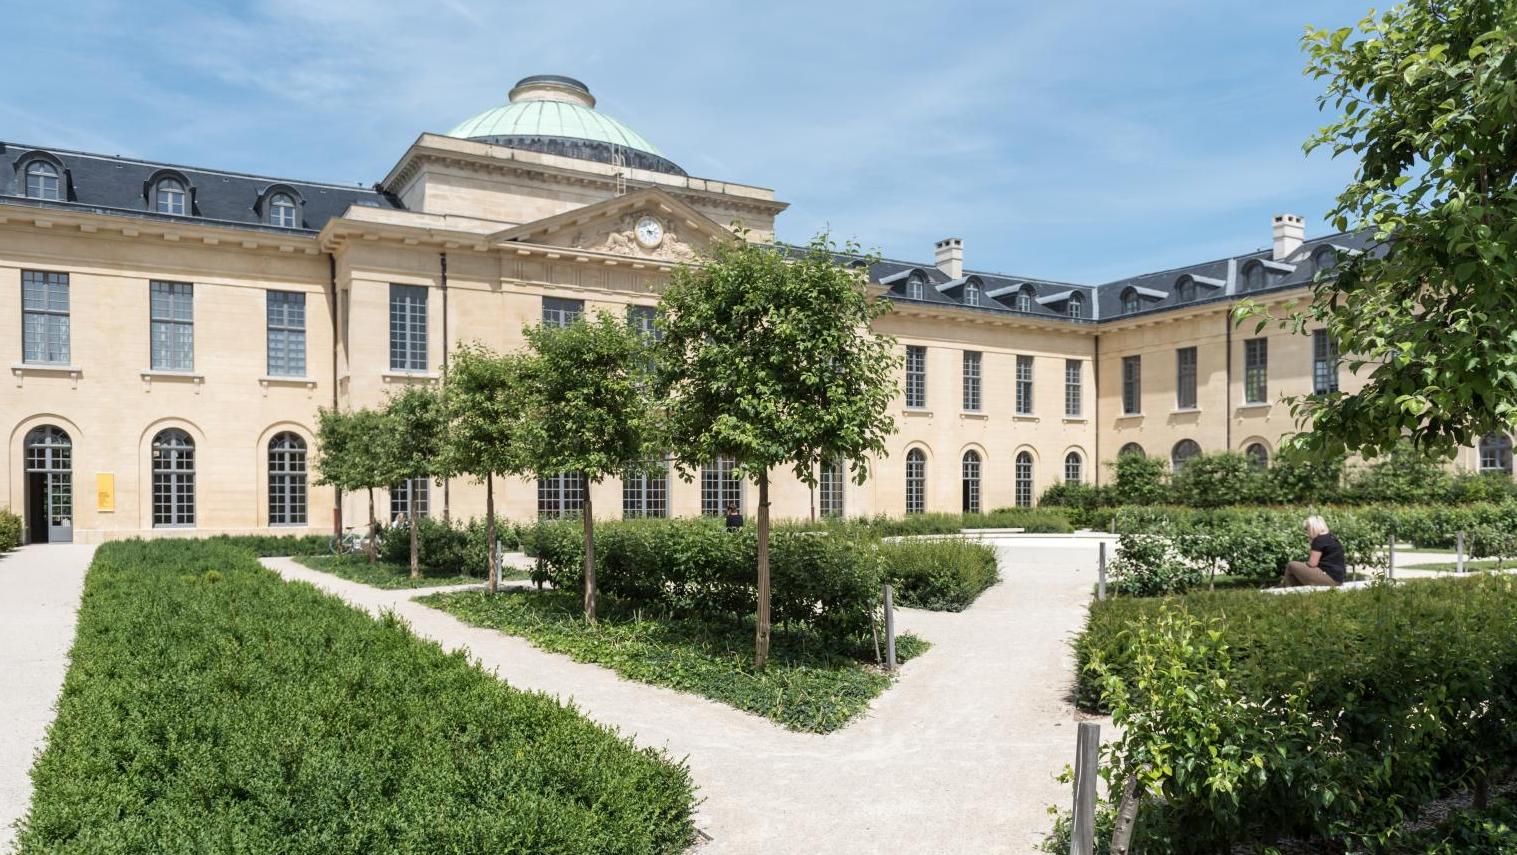 Aile nord de l’ancien hôpital royal de Versailles (façade sud), après requalification... Qui veut la peau des architectes ?